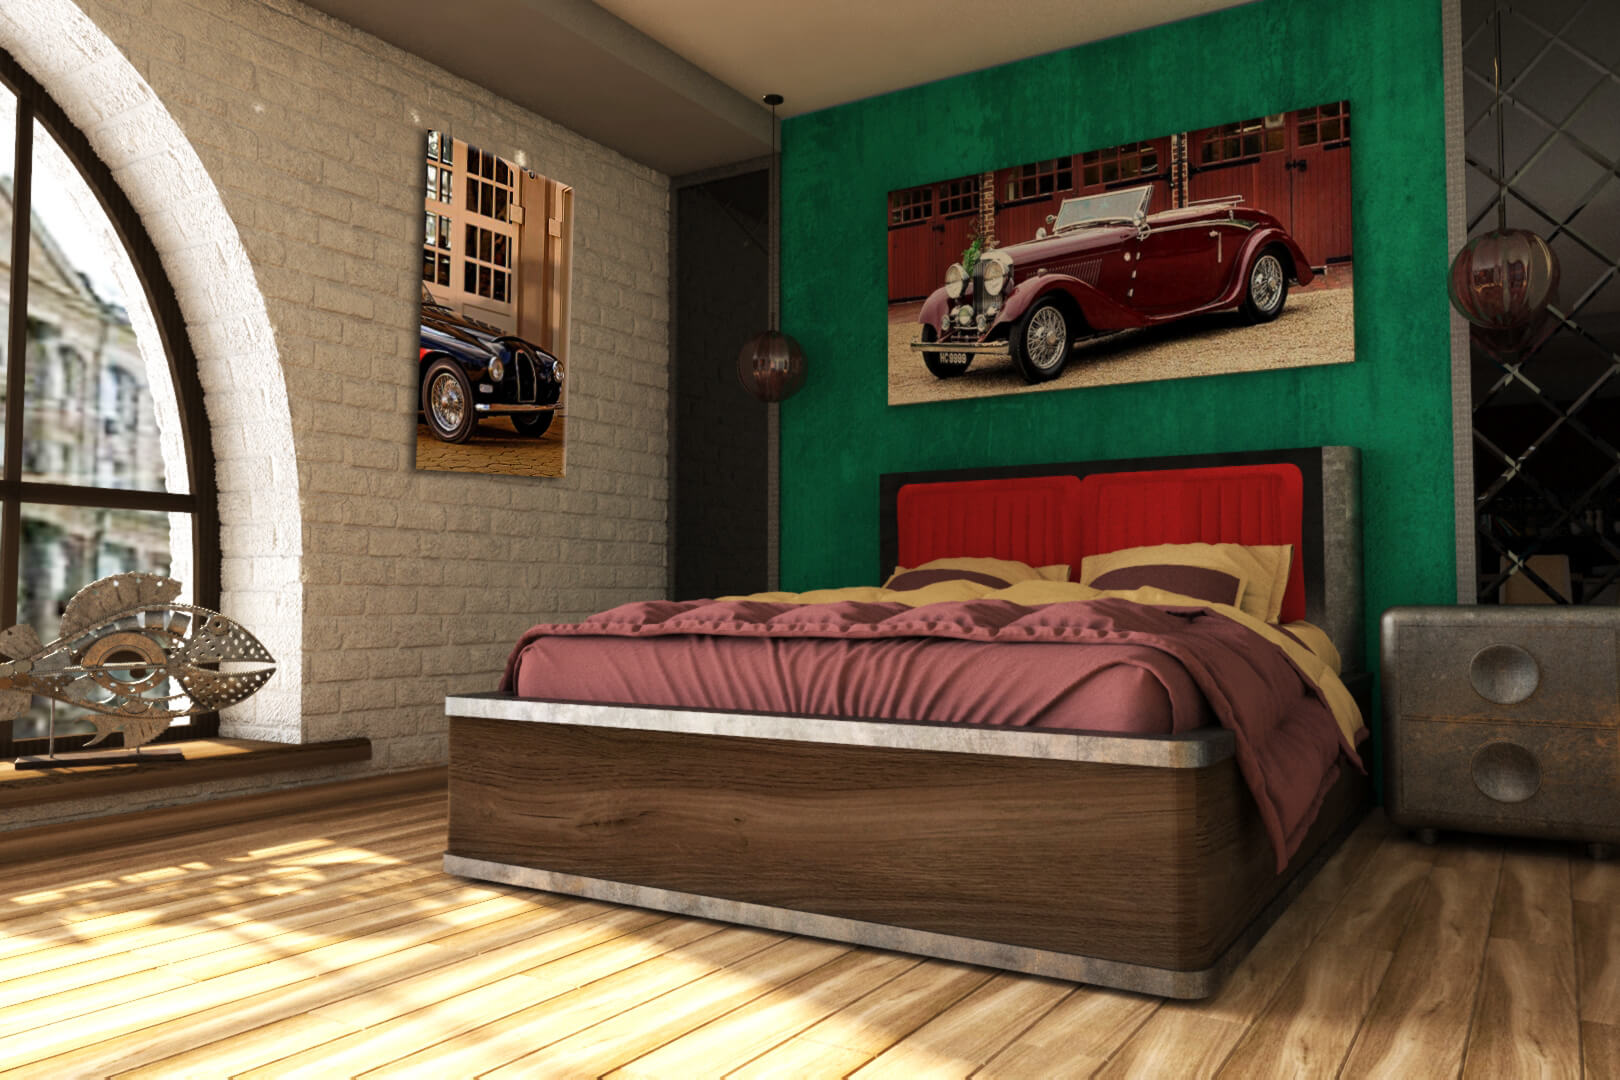 Большая кровать и картины с авто.